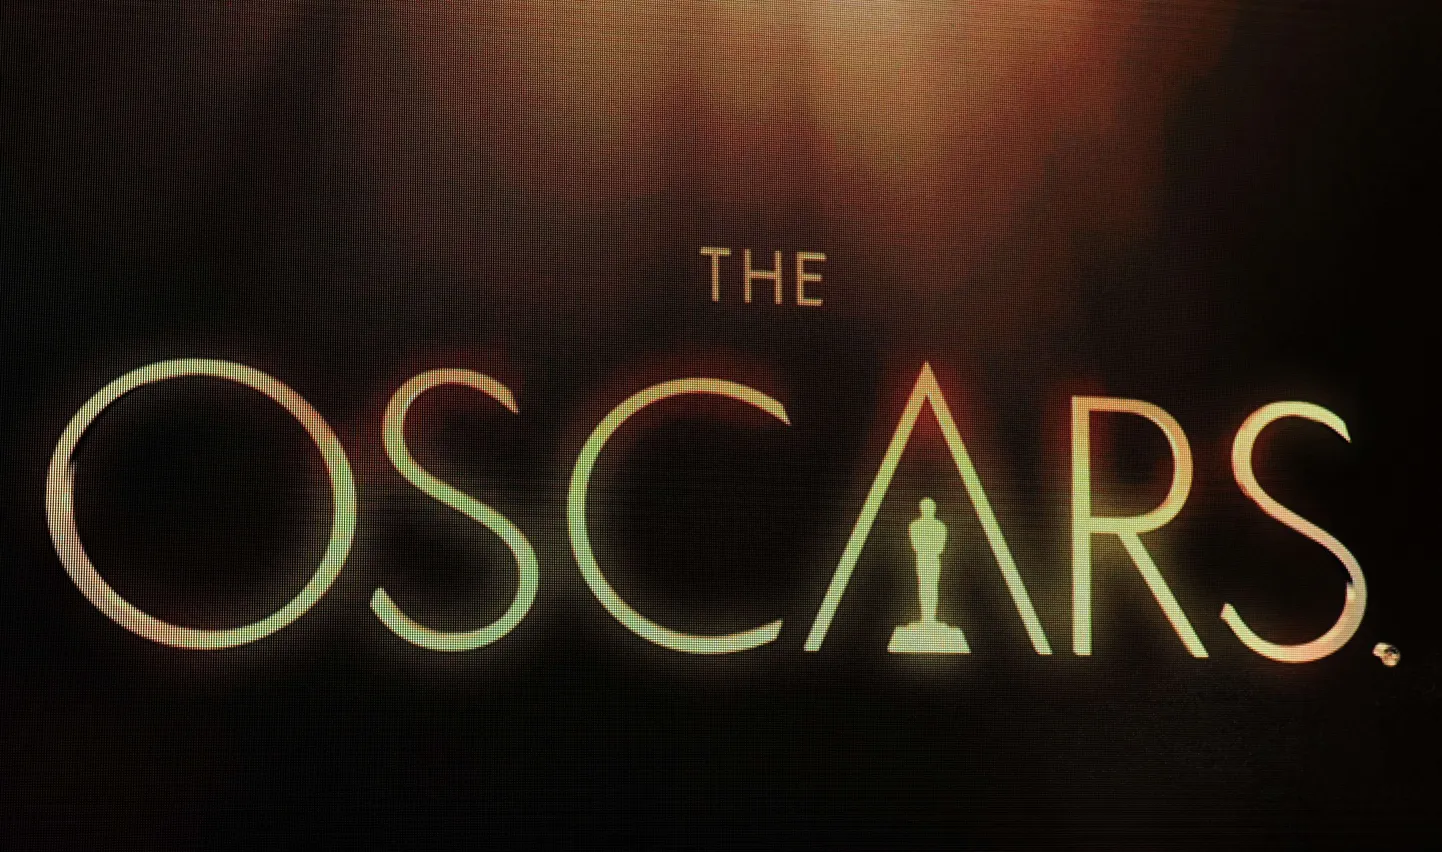 Oscari originaallaulu kategoorias nominatsiooni saanud pala diskvalifitseeriti